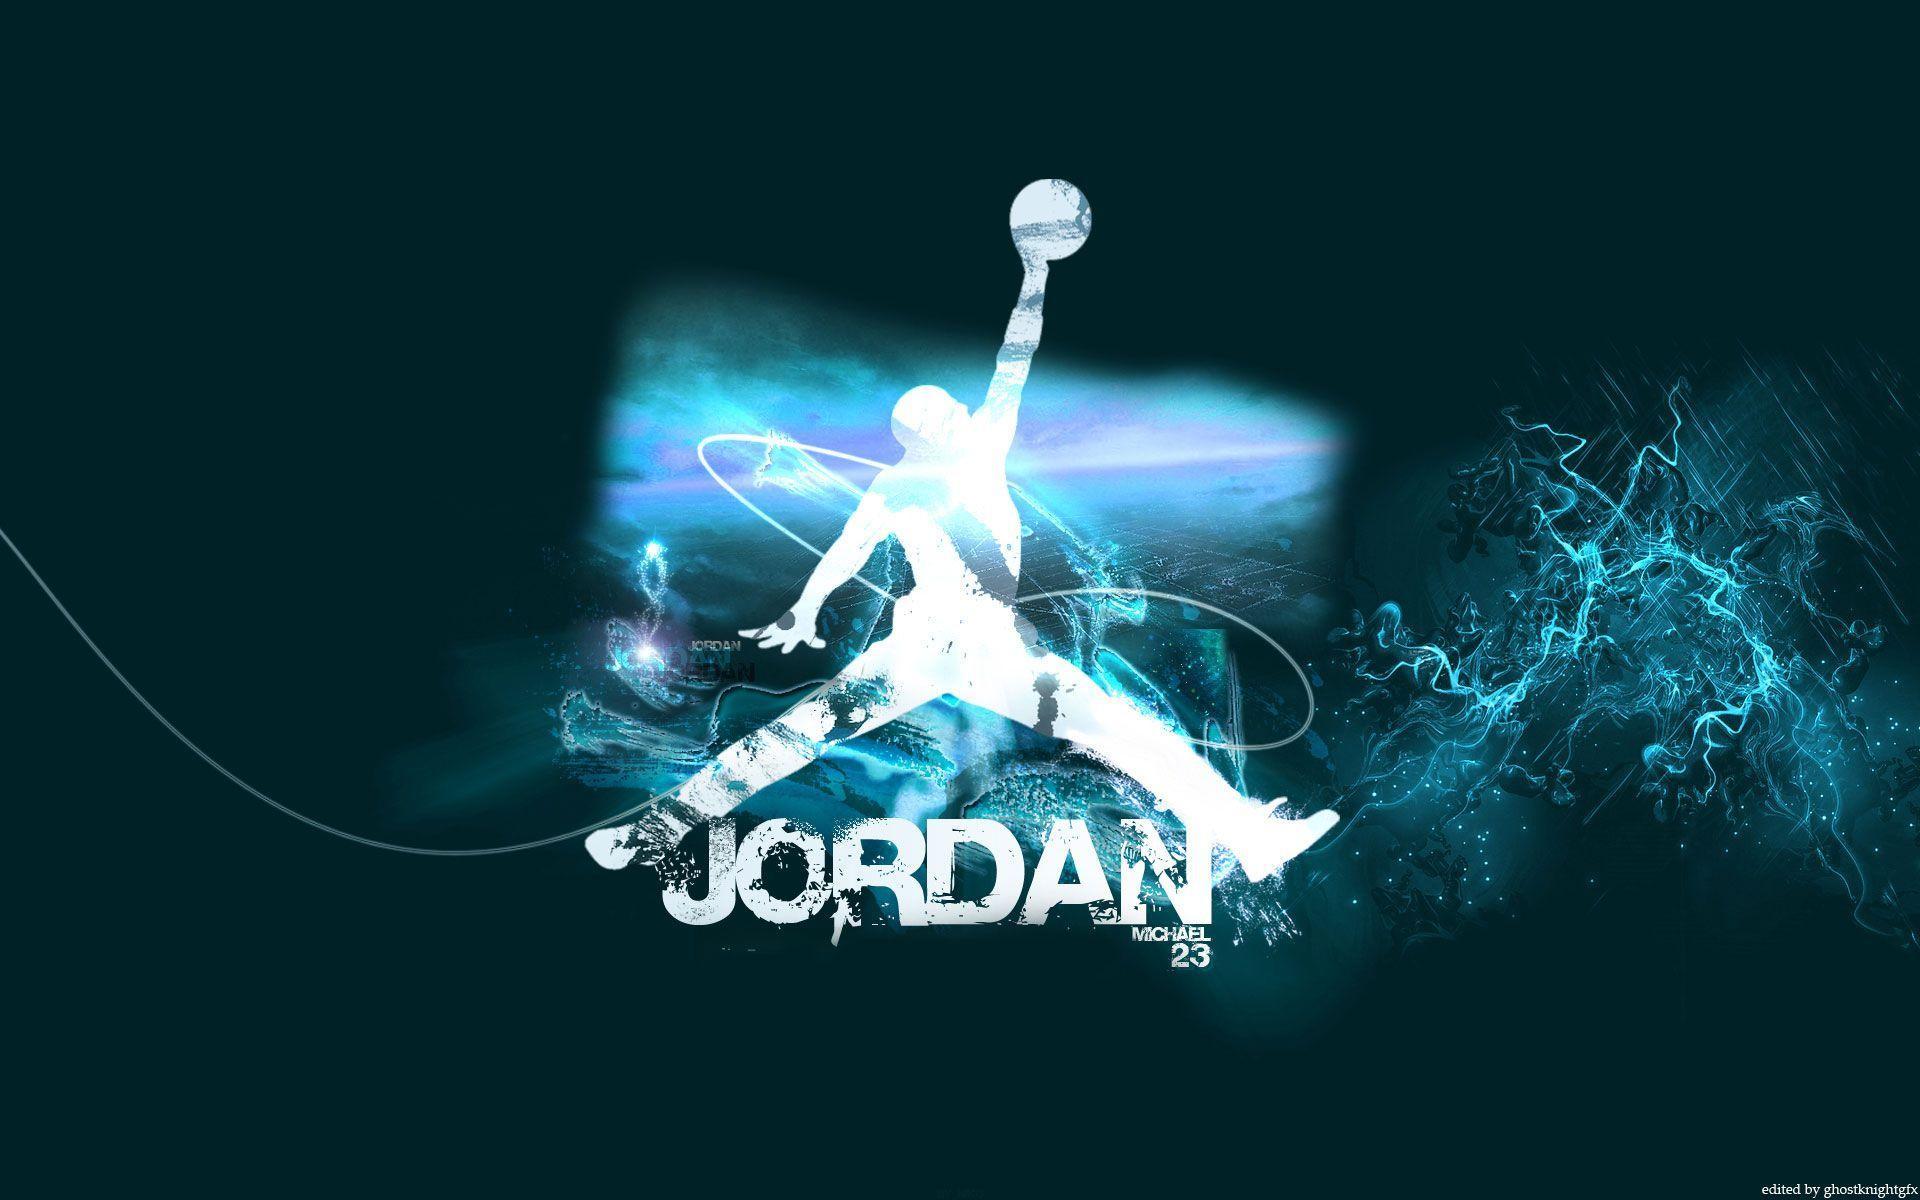 Michael Jordan Wallpaper at BasketWallpaper